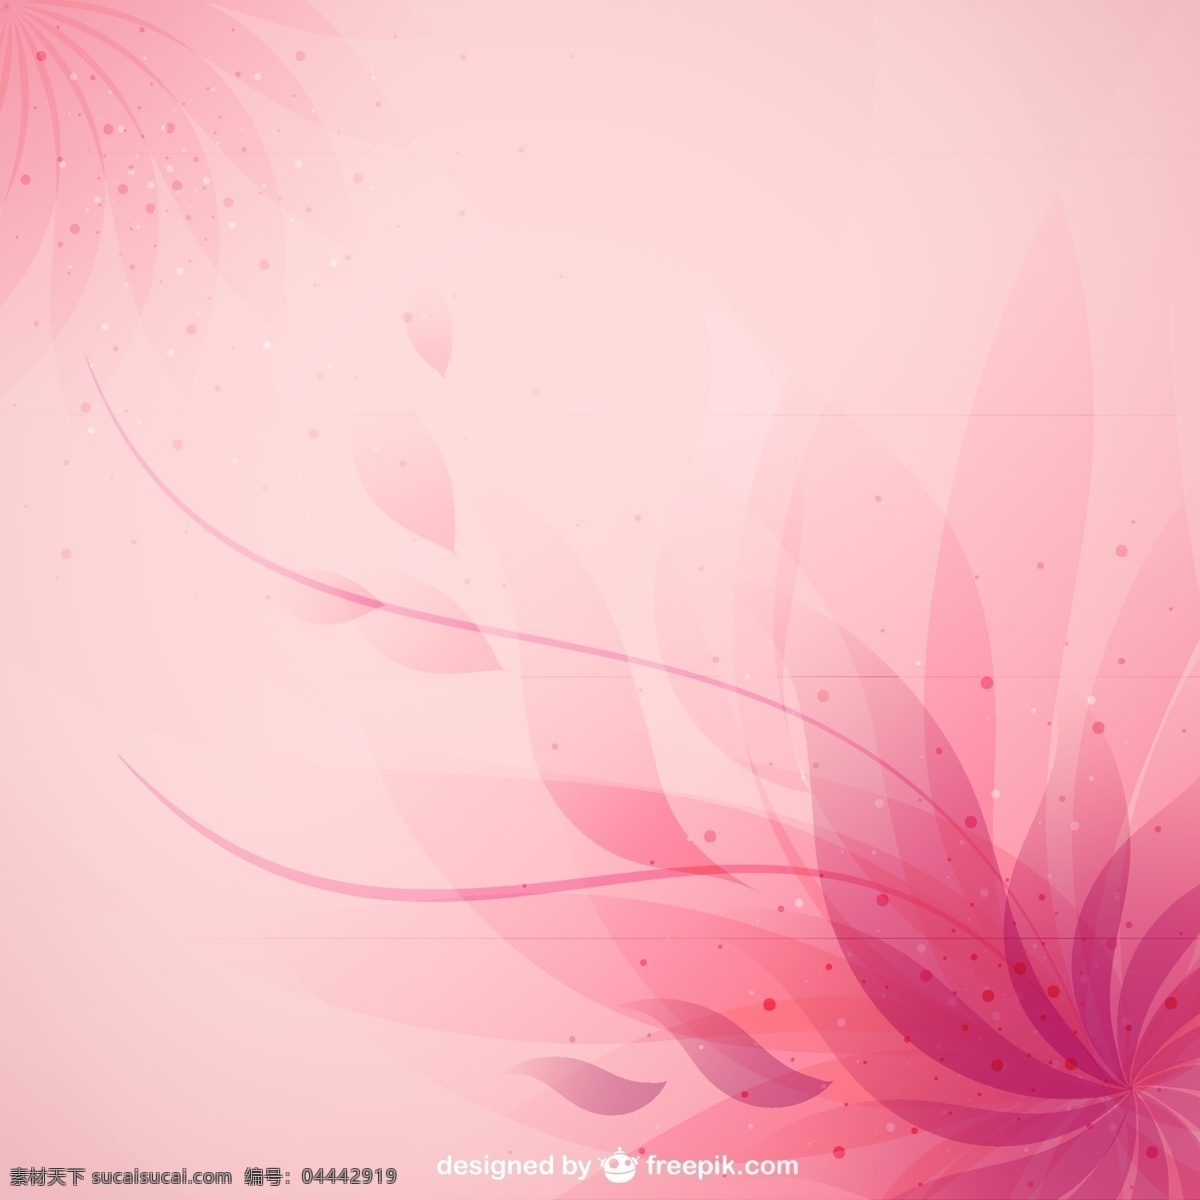 抽象 花卉 背景图片 花纹 背景 粉色 矢量图 格式 矢量 高清图片